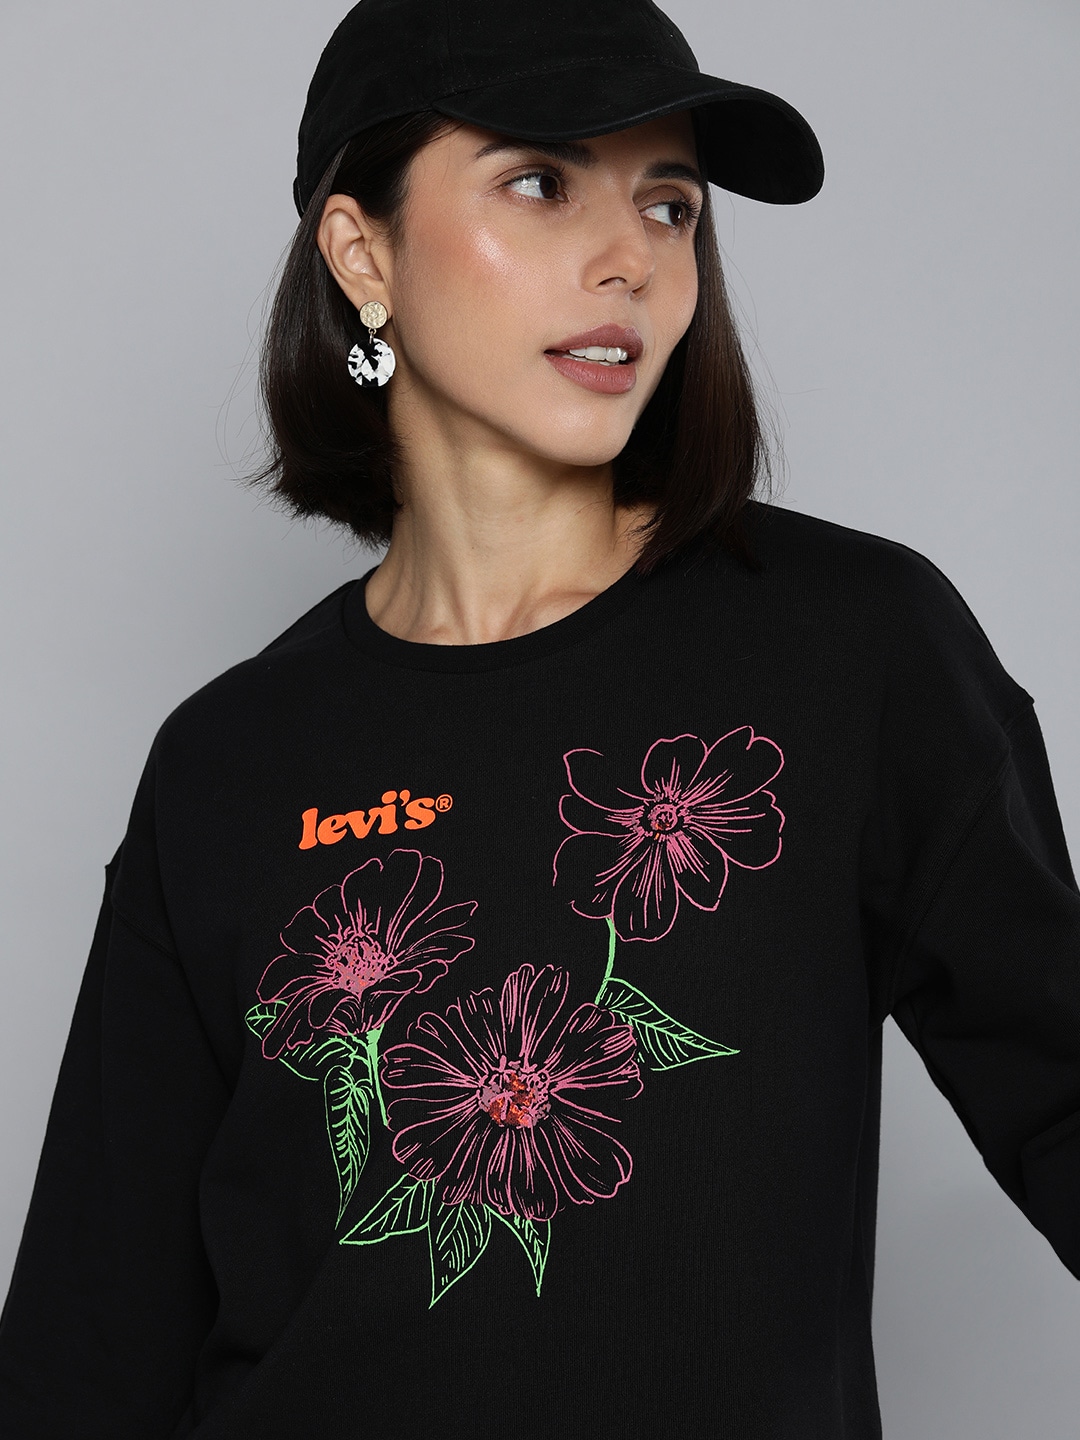 Levis Women Black Printed Drop-Shoulder Sweatshirt Price in India